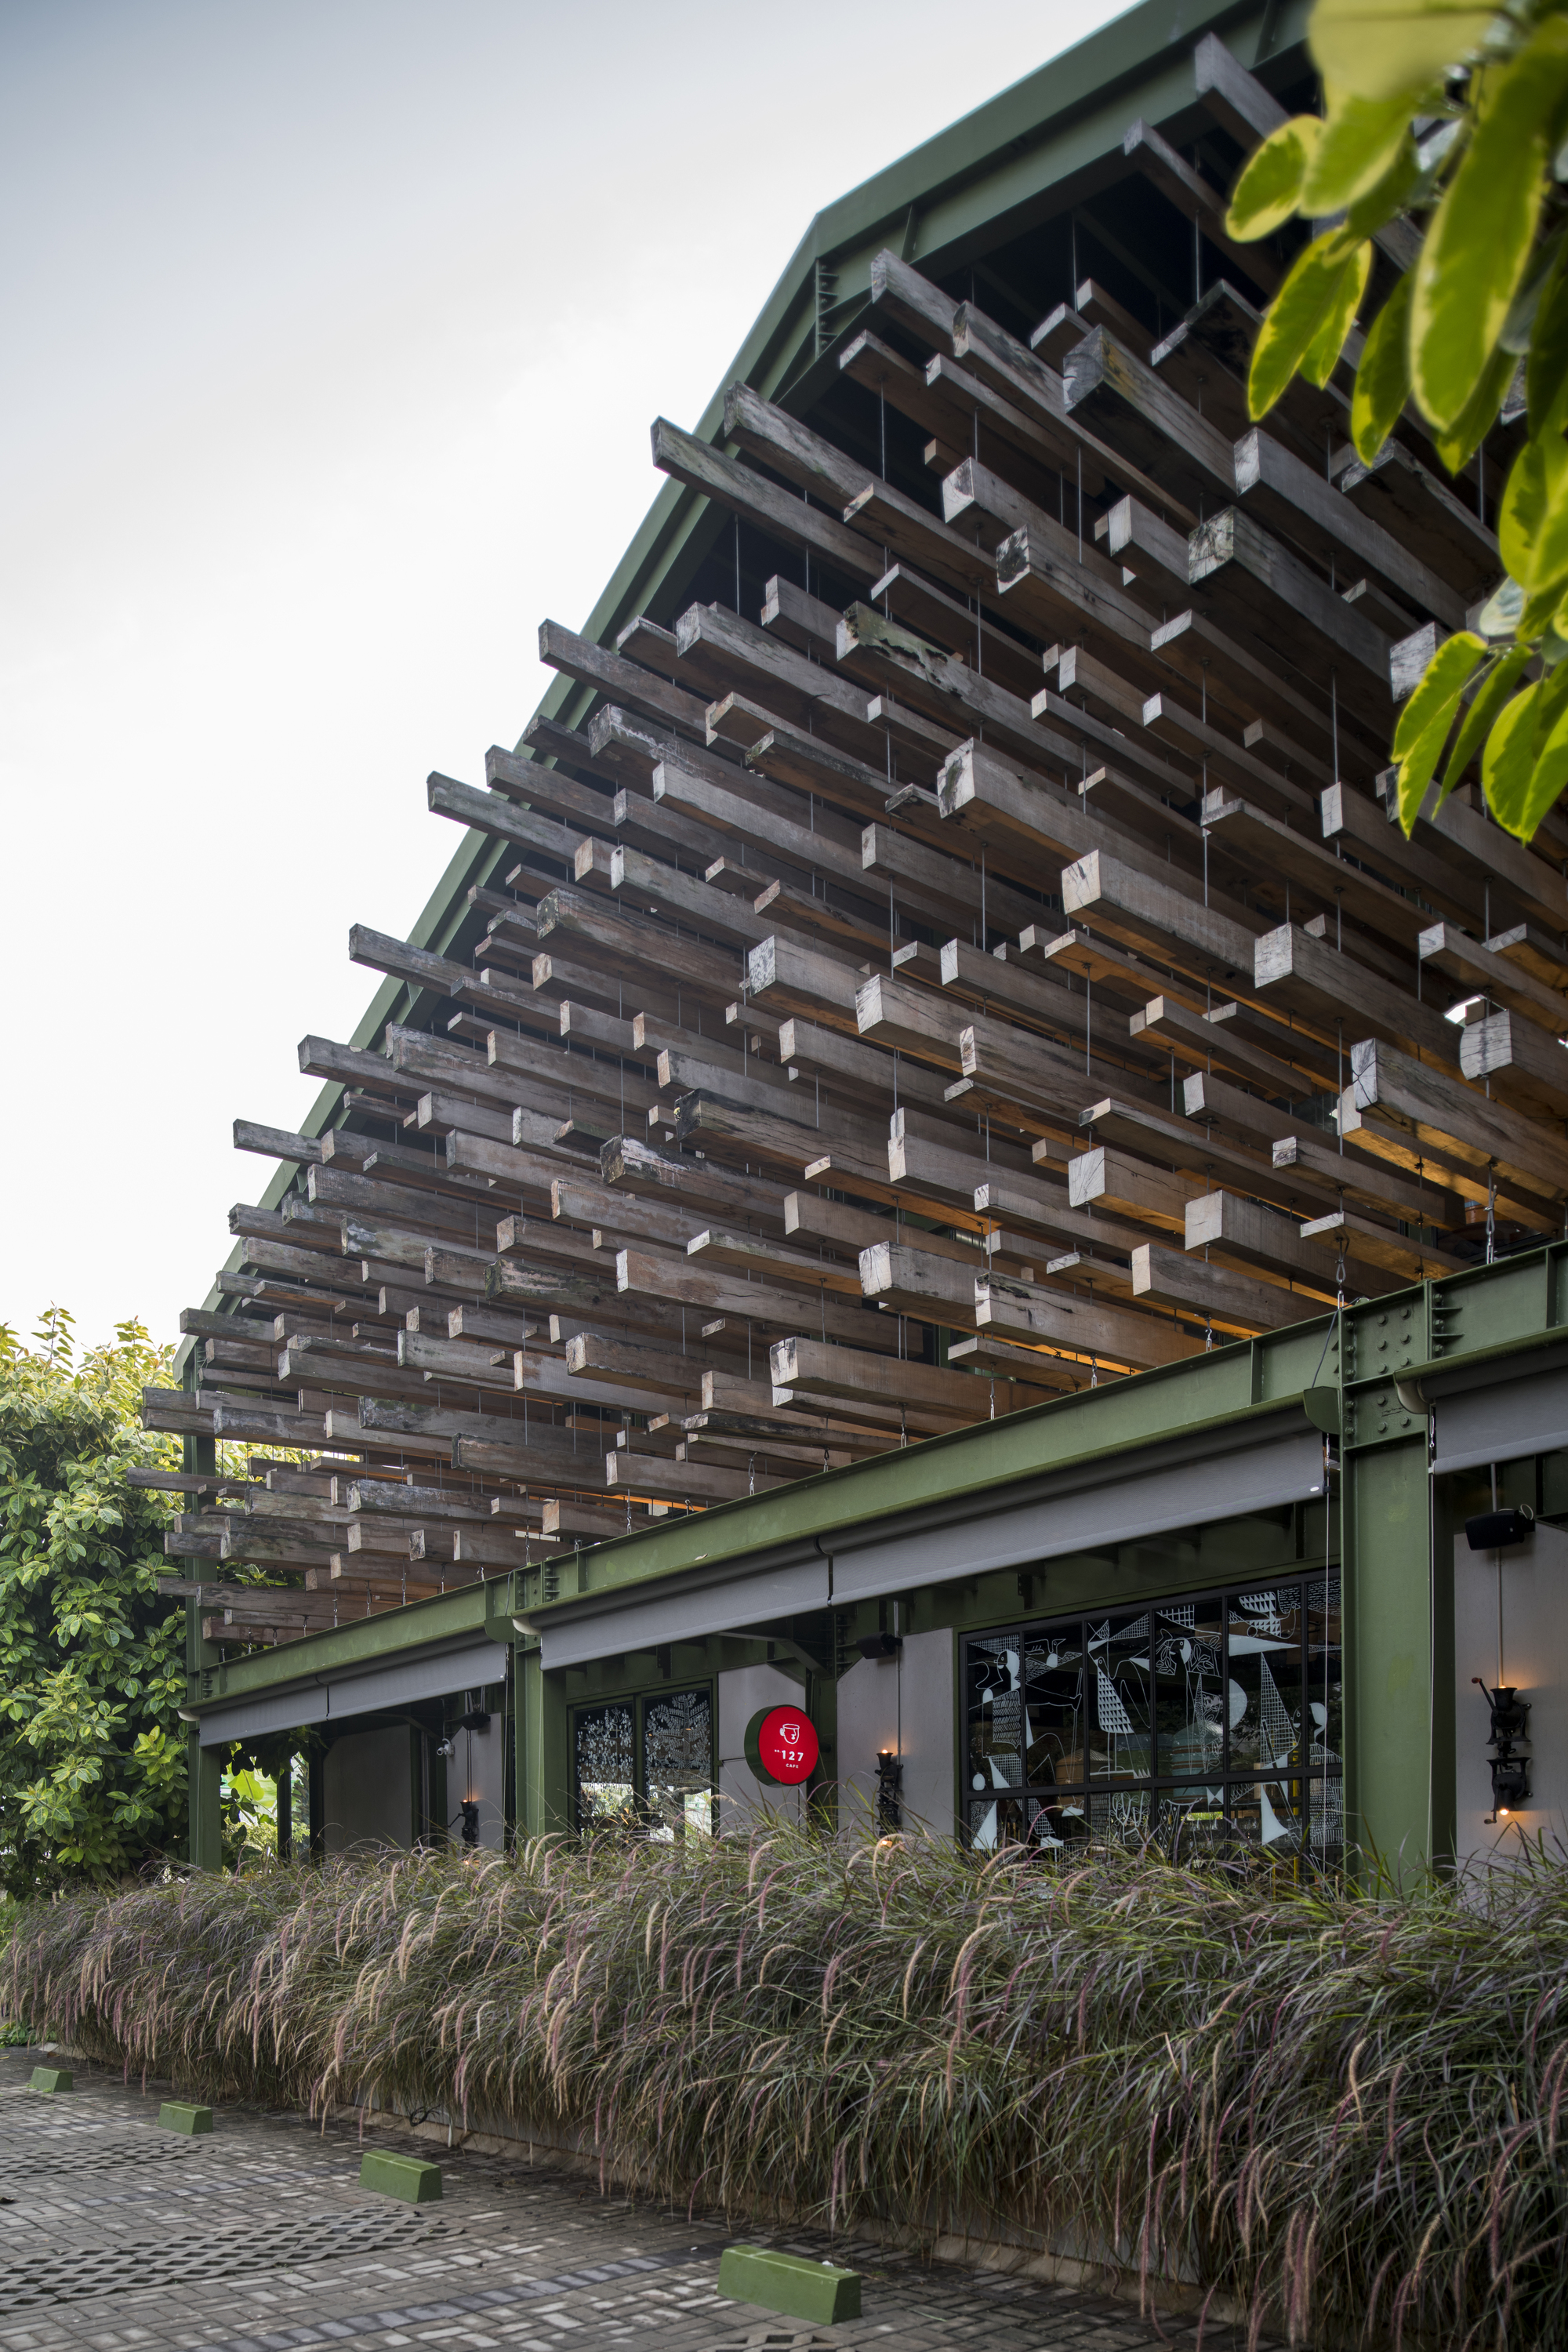 Kayu Kayu 餐厅，为木匠设计的木质食堂 / W Office|ART-Arrakis | 建筑室内设计的创新与灵感